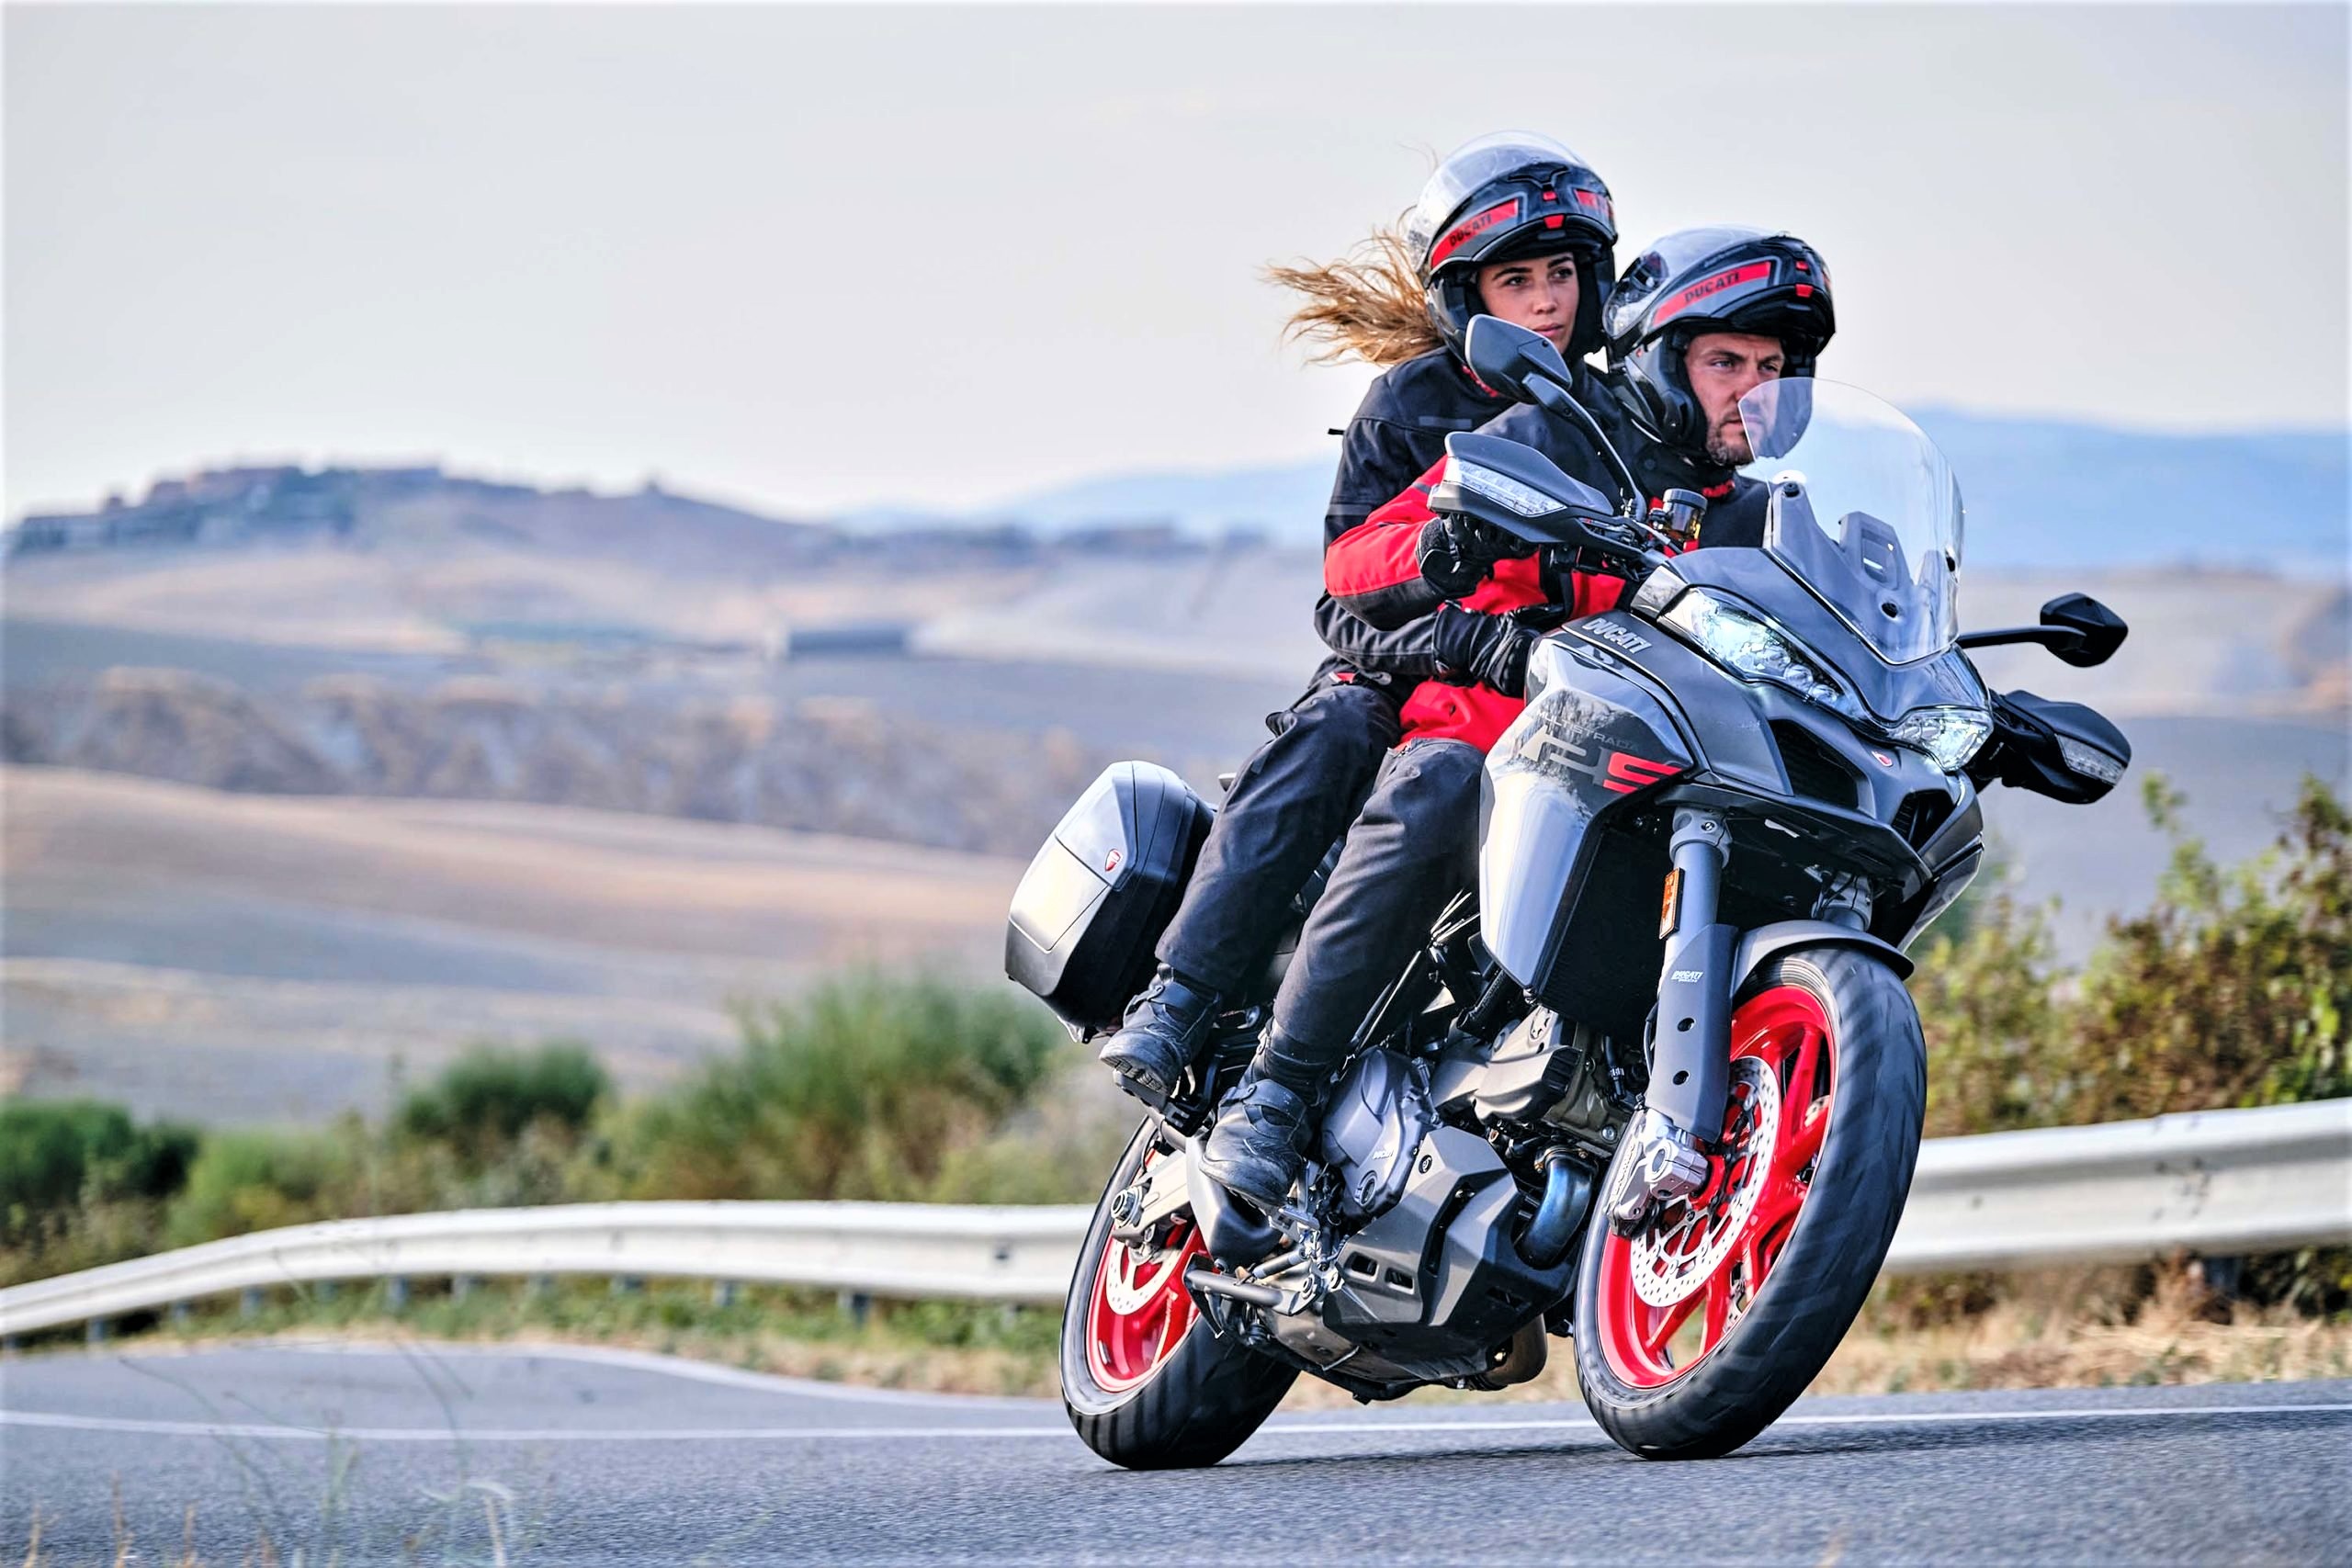 “Siêu môtô” cho những cung phượt mùa hè – Ducati Multistrada V2